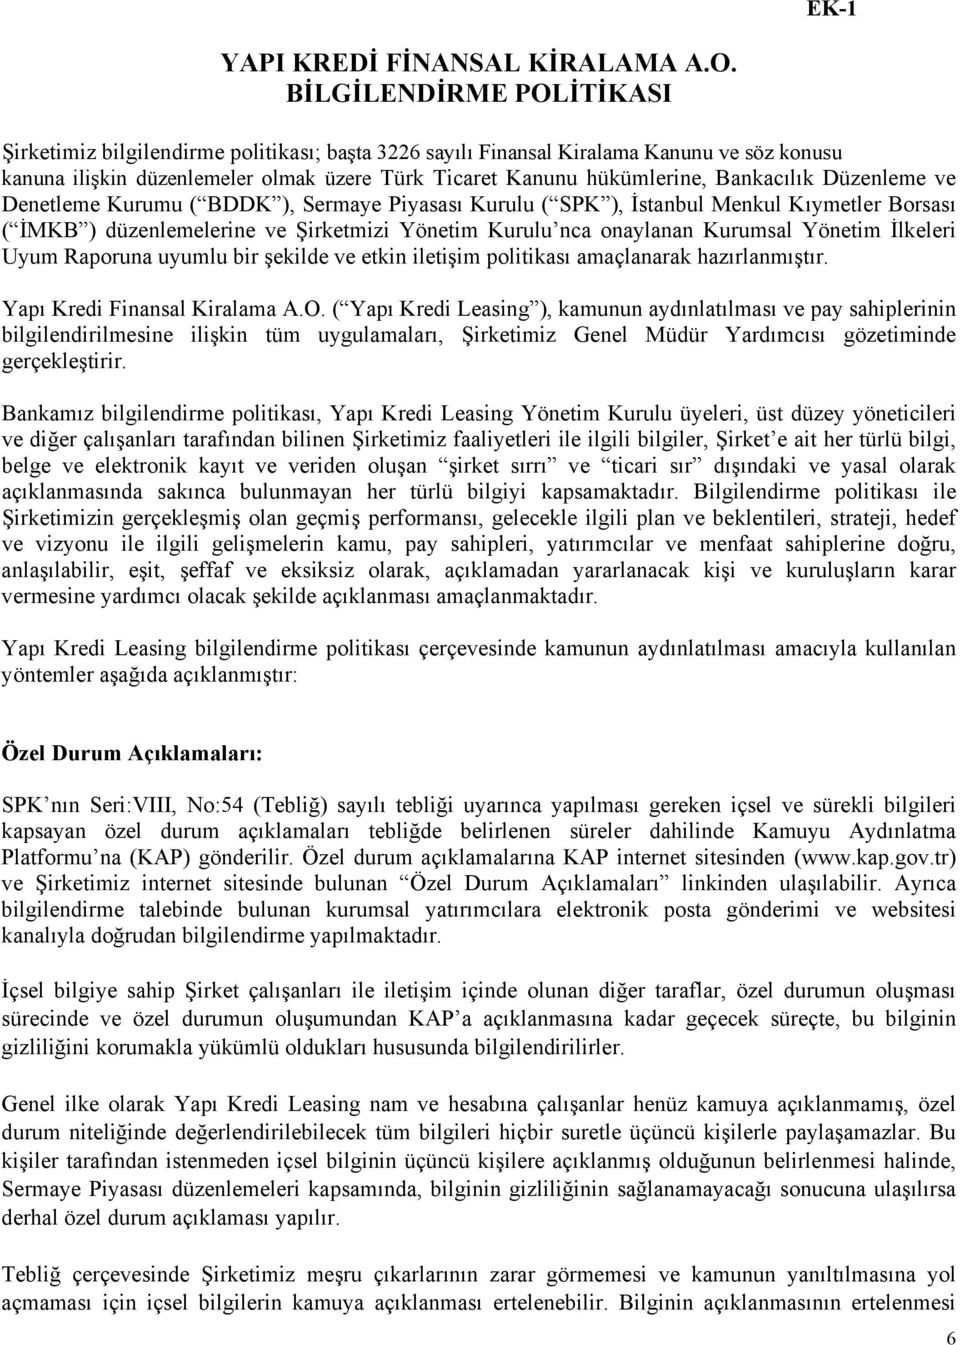 Bankacılık Düzenleme ve Denetleme Kurumu ( BDDK ), Sermaye Piyasası Kurulu ( SPK ), İstanbul Menkul Kıymetler Borsası ( İMKB ) düzenlemelerine ve Şirketmizi Yönetim Kurulu nca onaylanan Kurumsal